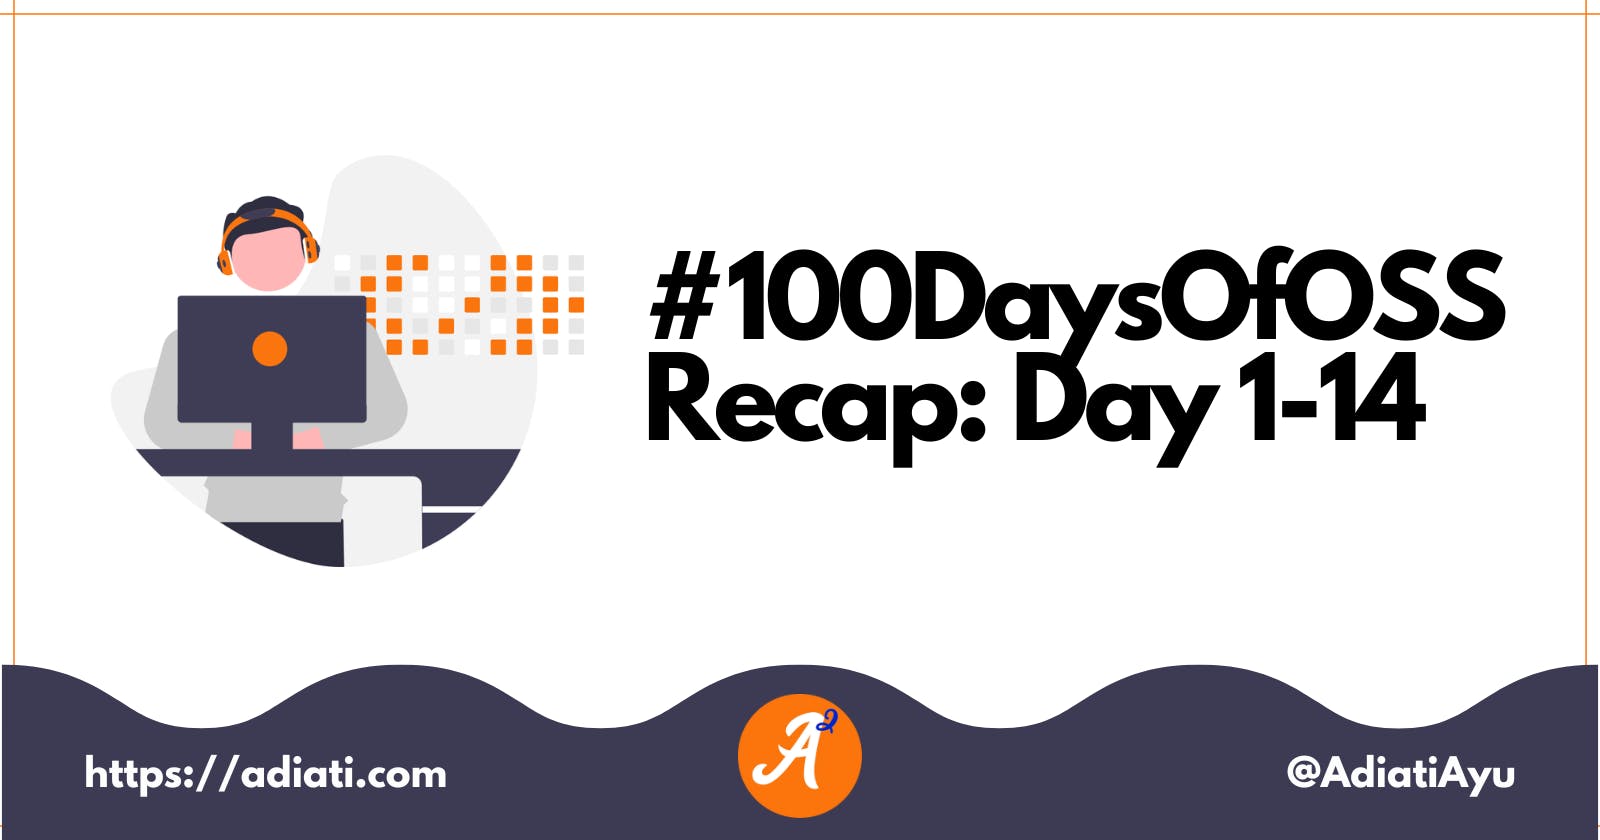 #100DaysOfOSS Recap: Day 1-14